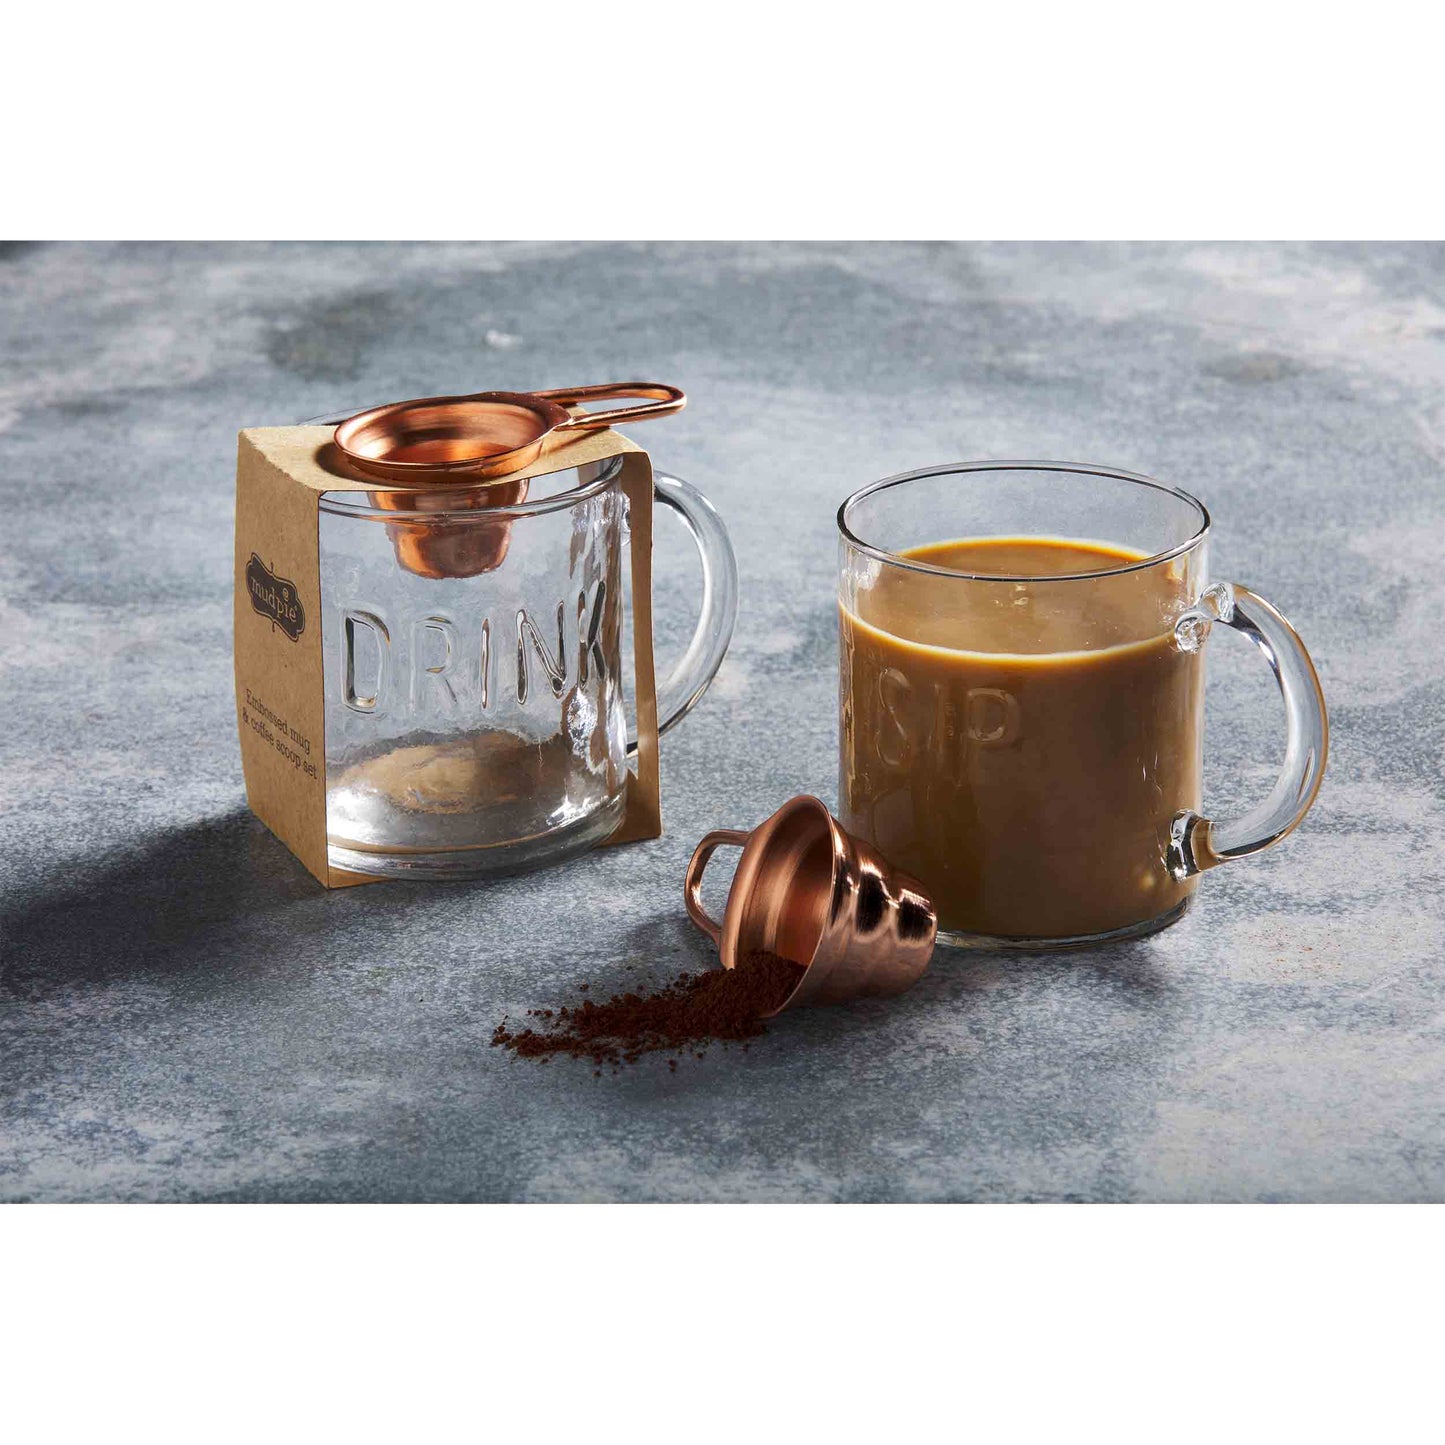 Drink Coffee Mug & Scoop Set